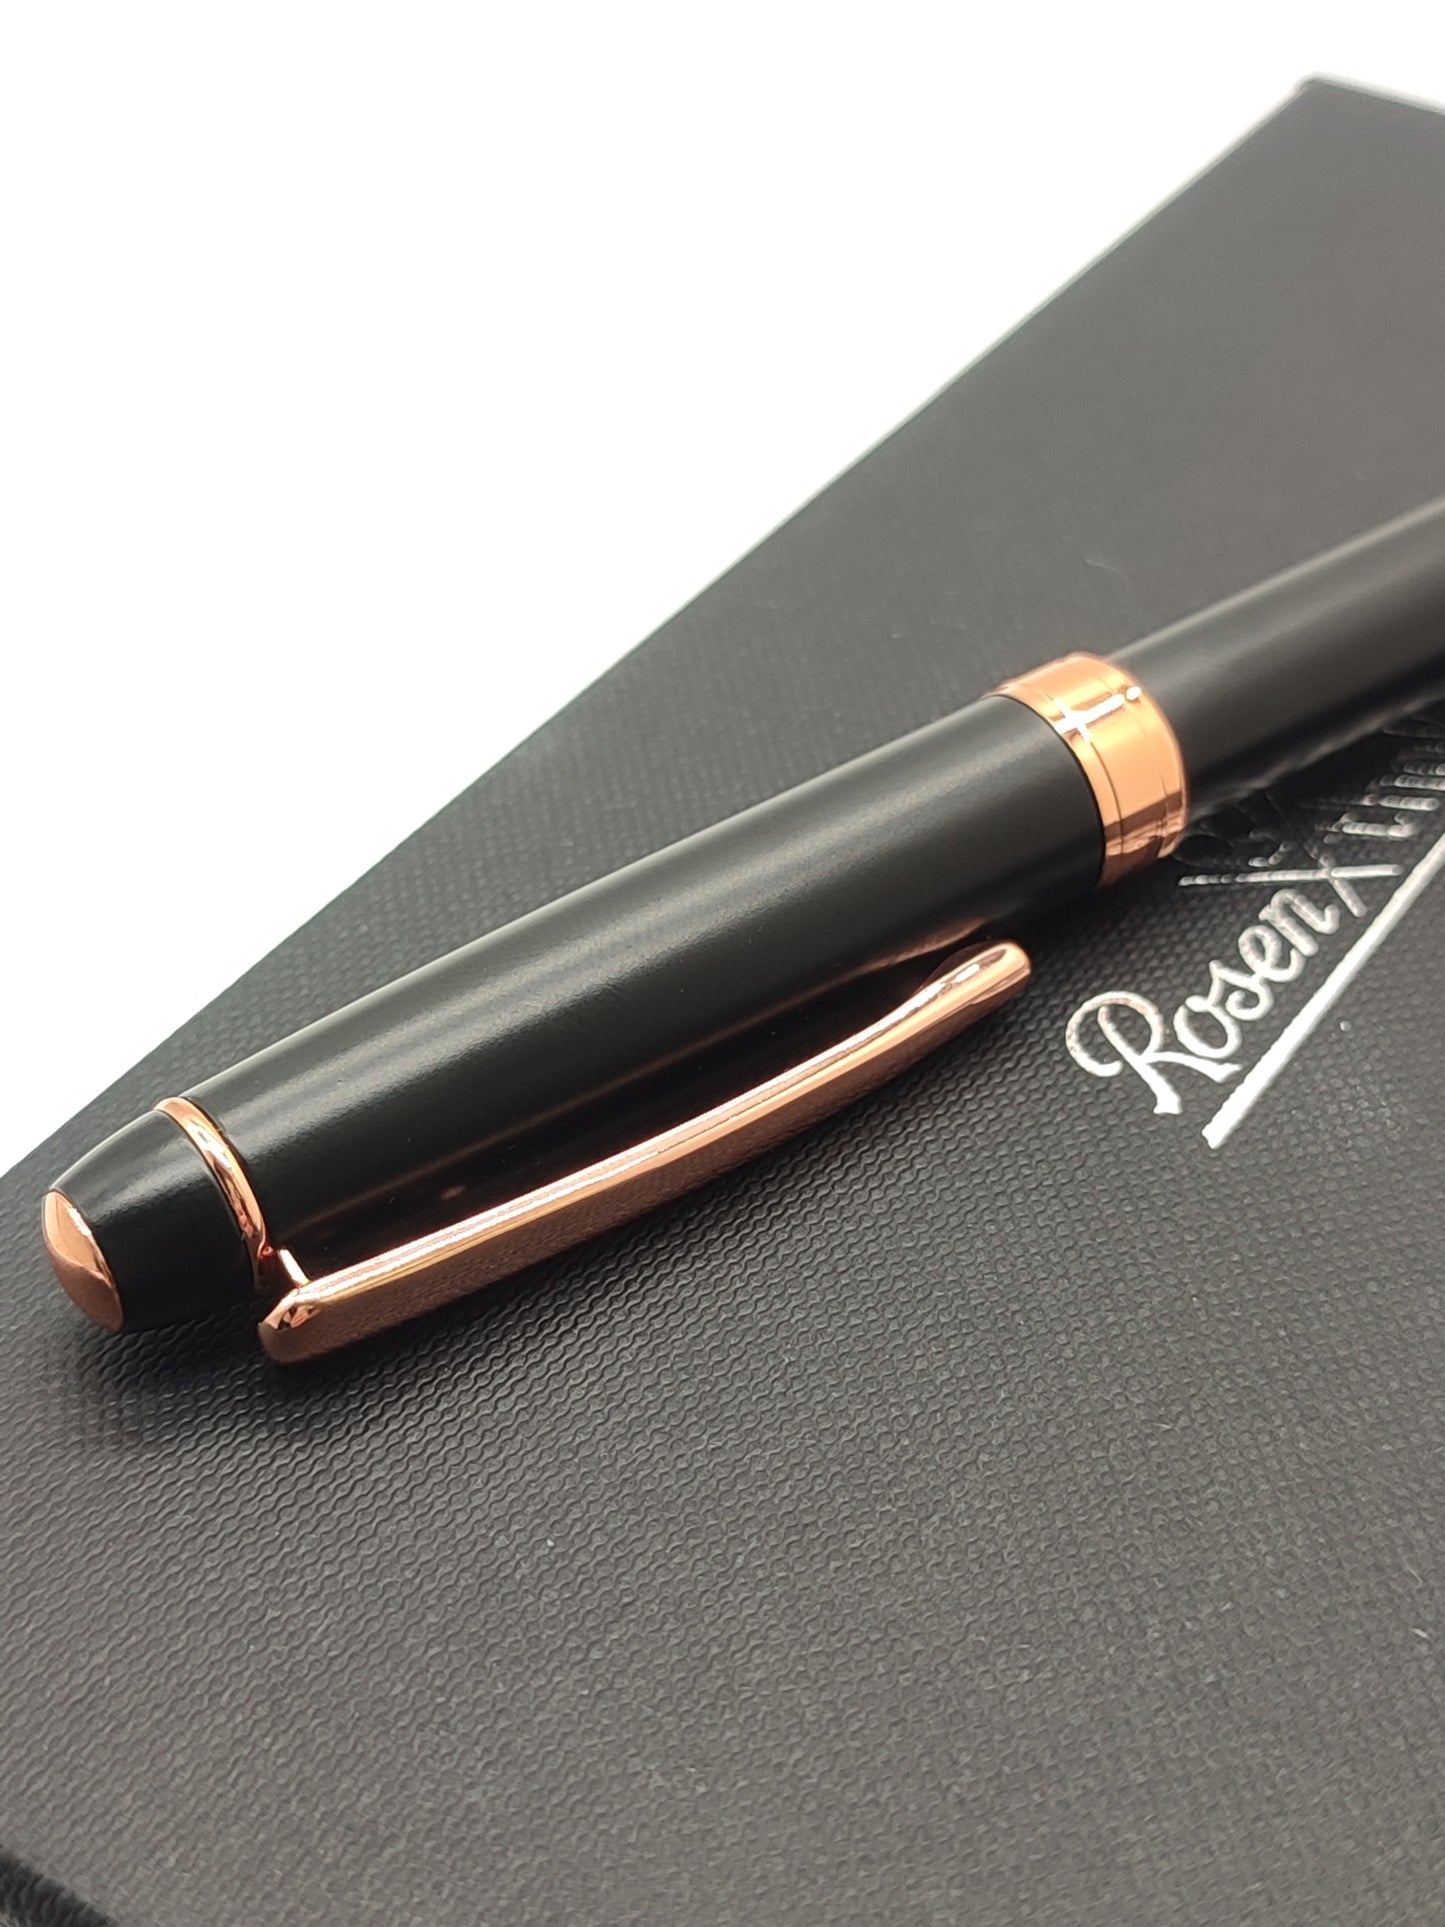 Rosenthal golden black ballpoint pen